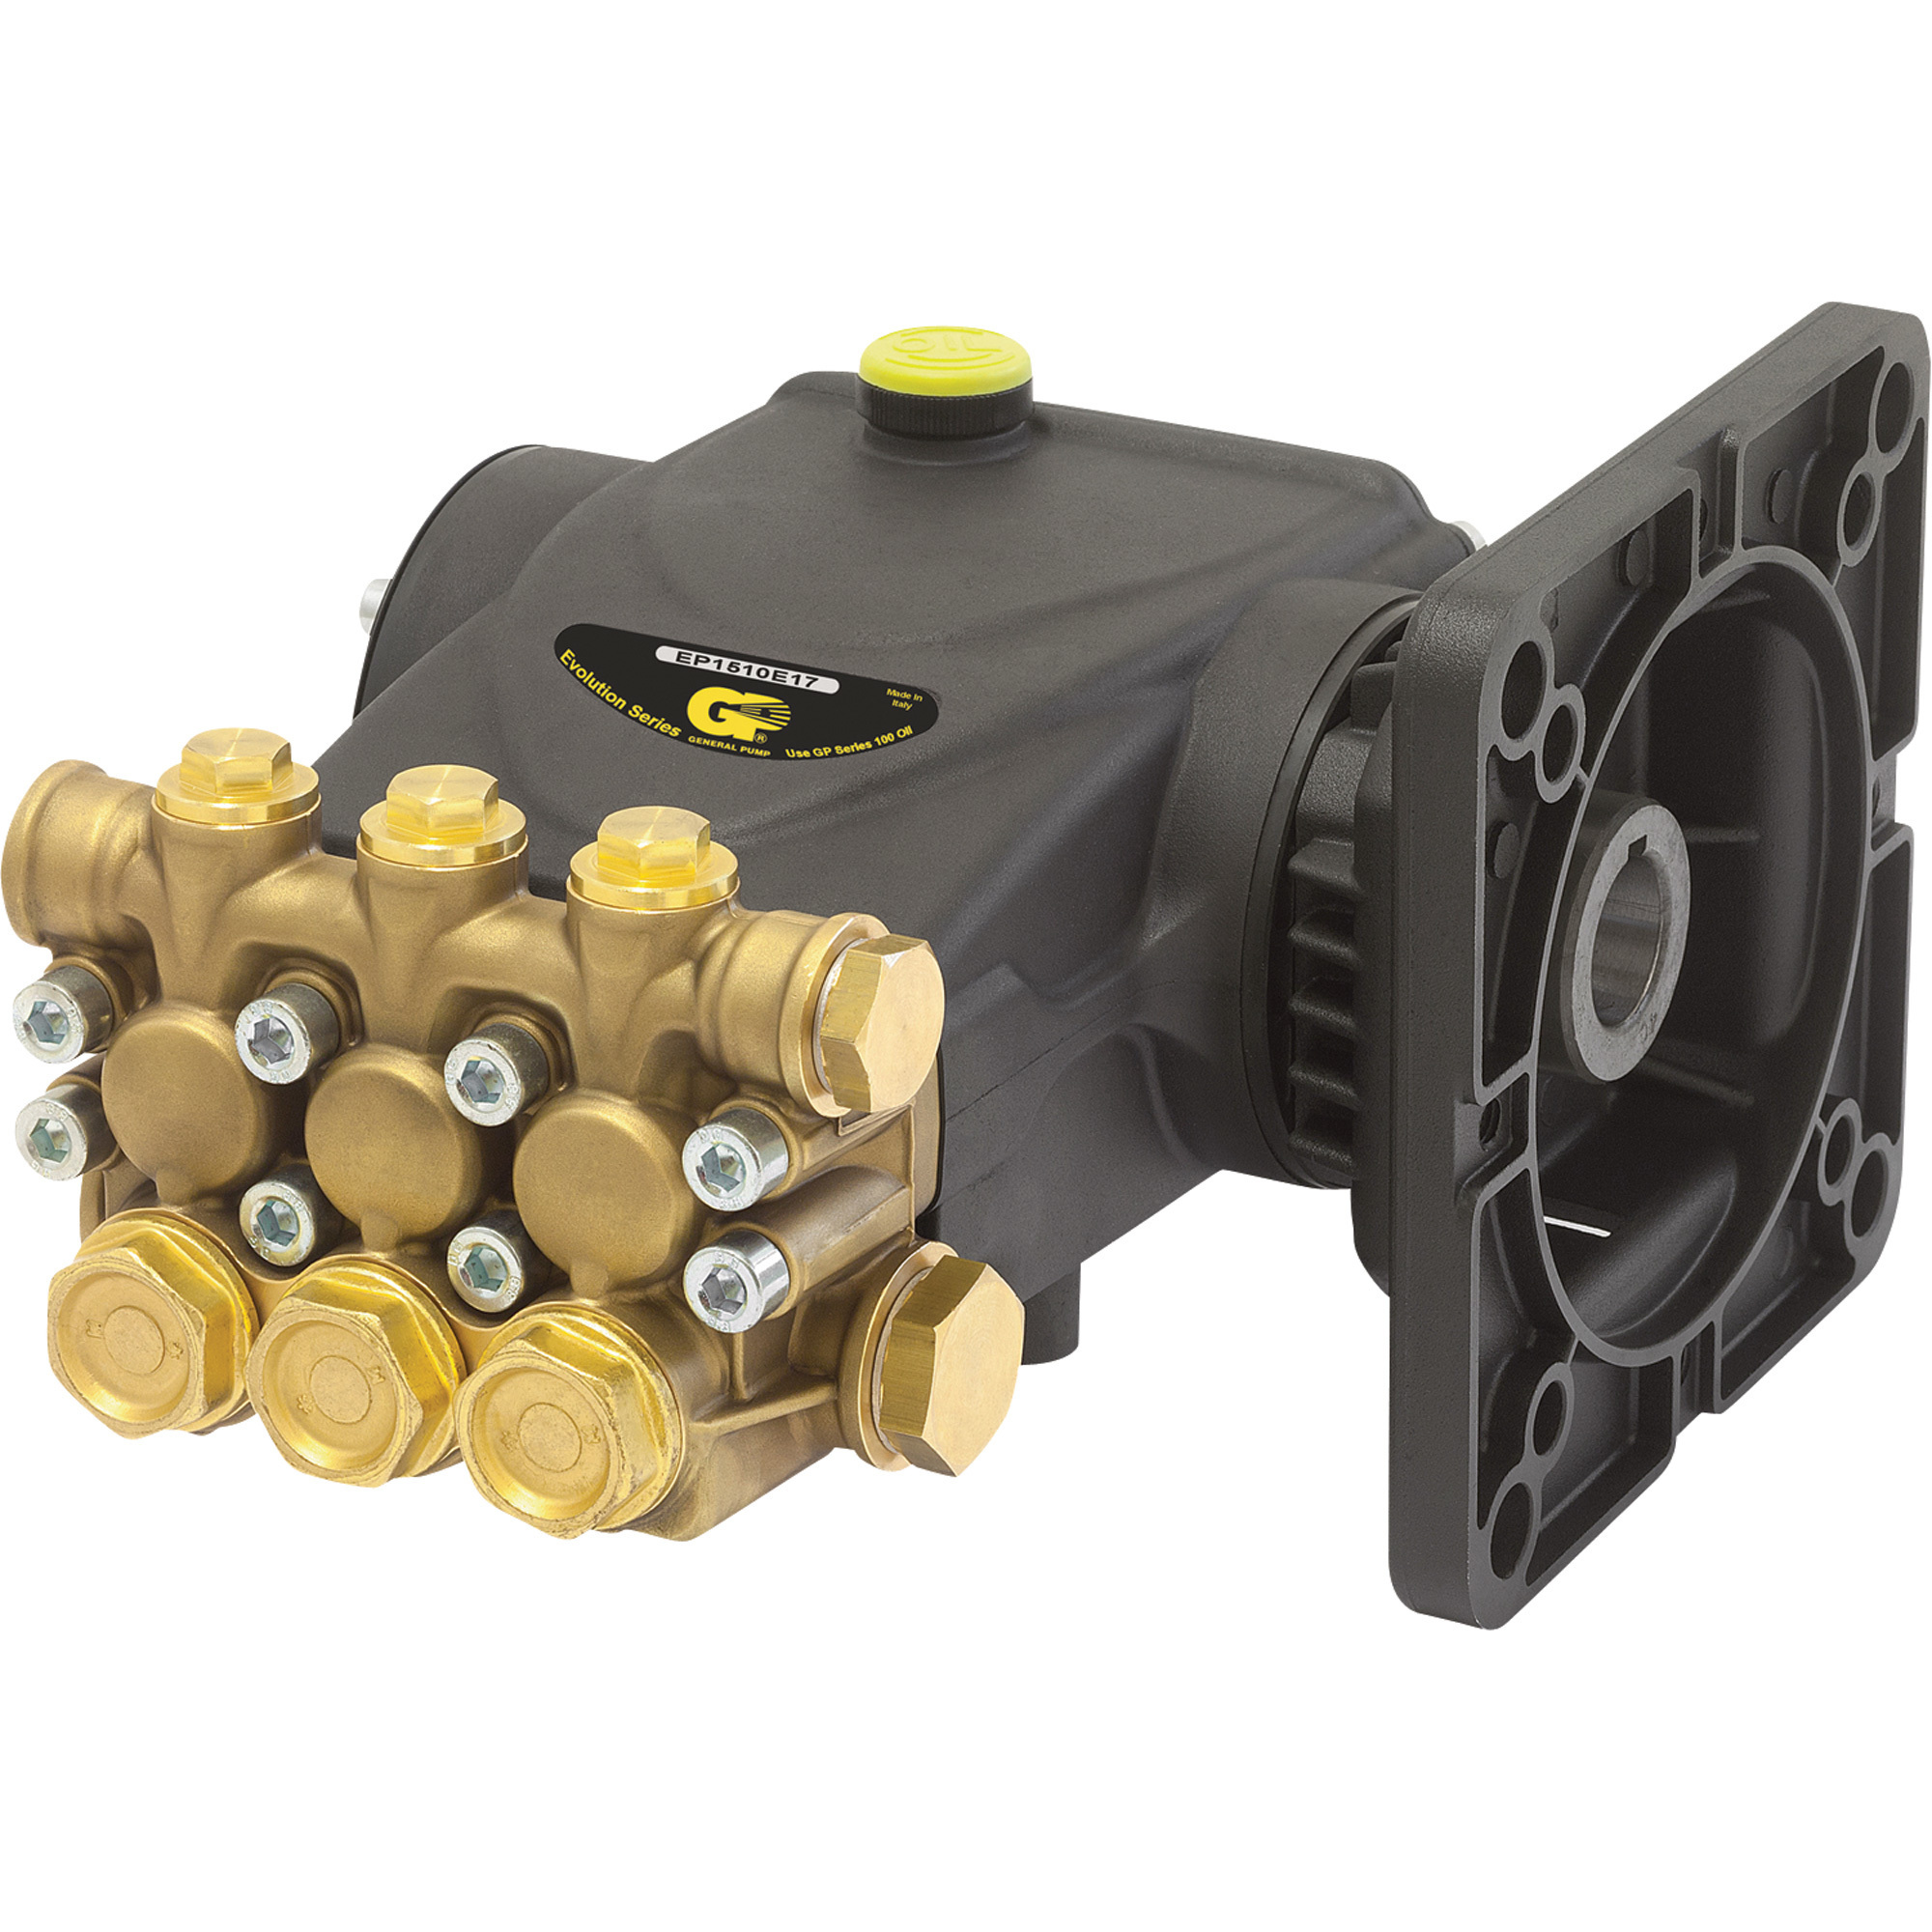 General Pump Triplex Pressure Washer Pump â 3045 PSI, 4.0 GPM, Electric Flange, Direct Drive, Model EP1812E17